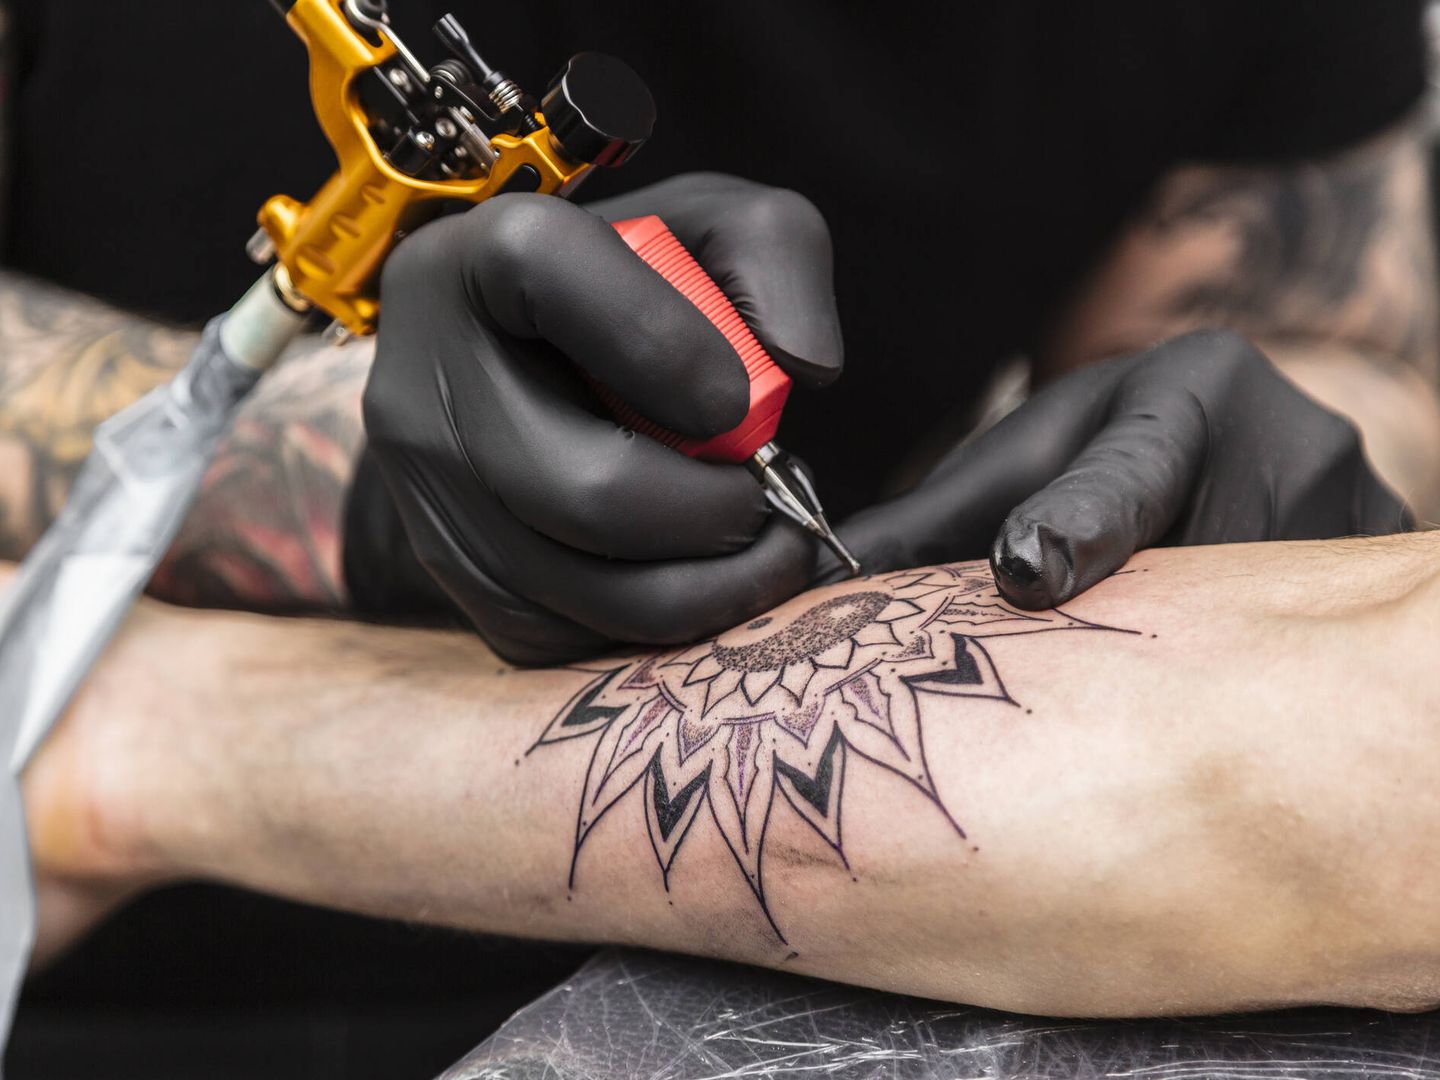 Un tatuaje siempre tiene riesgos, pero se pueden evitar con las precauciones adecuadas. (iStock)